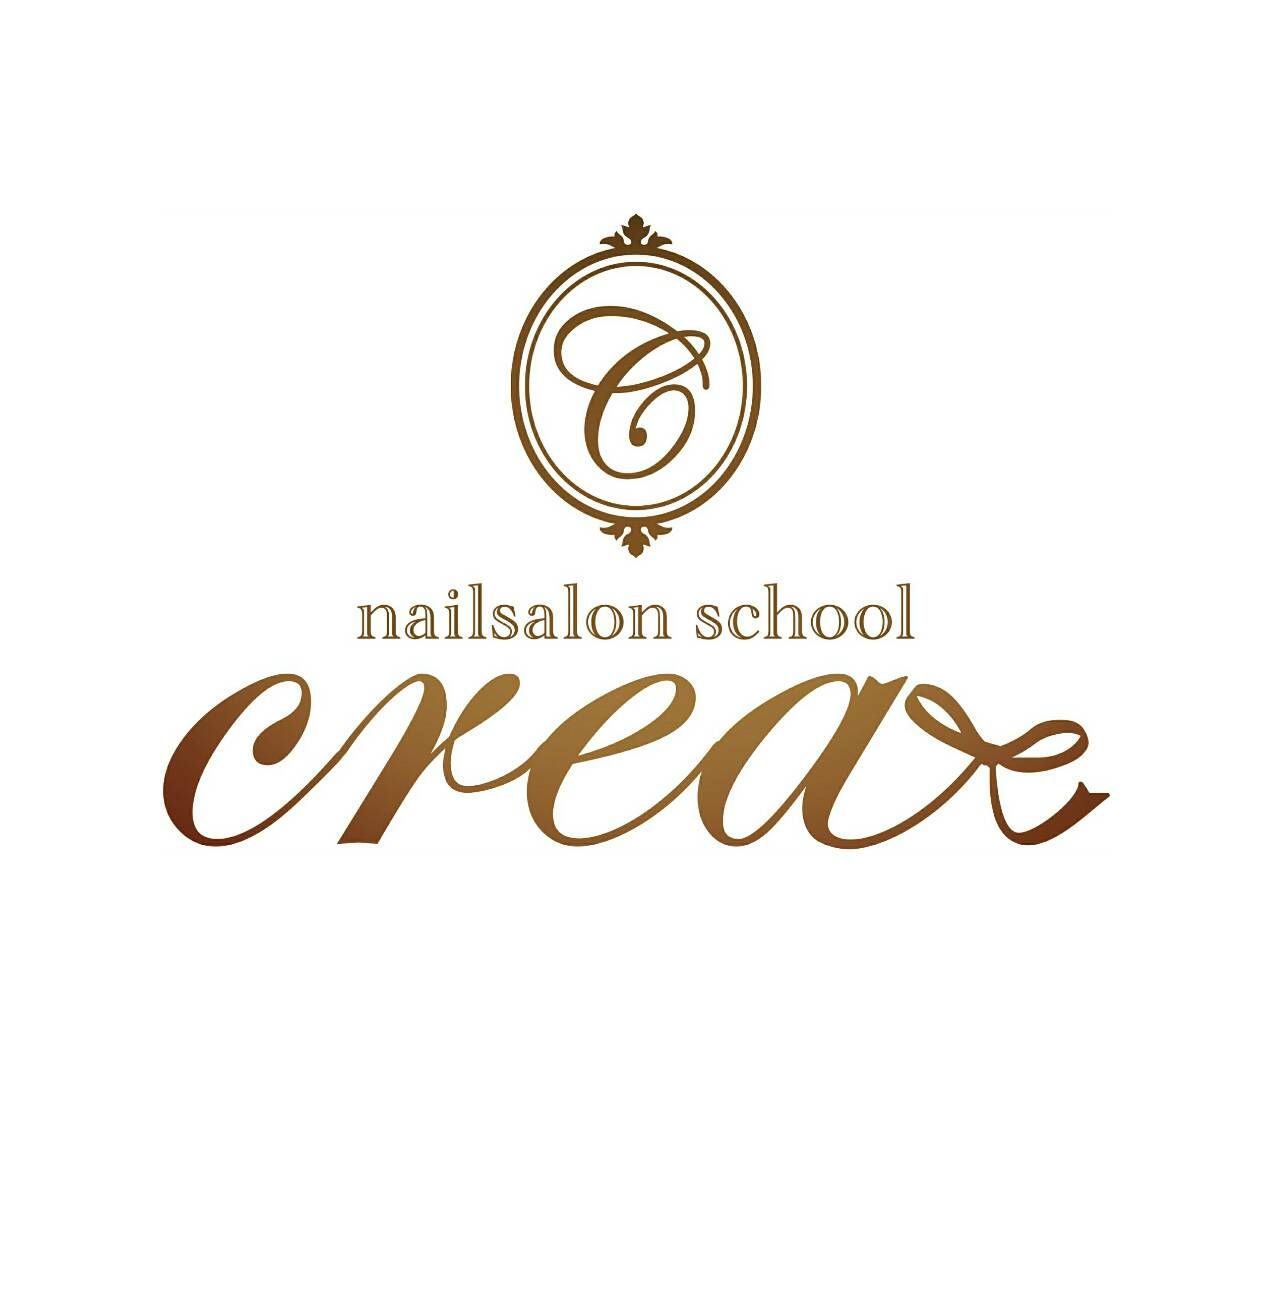 nailsalon & school crea